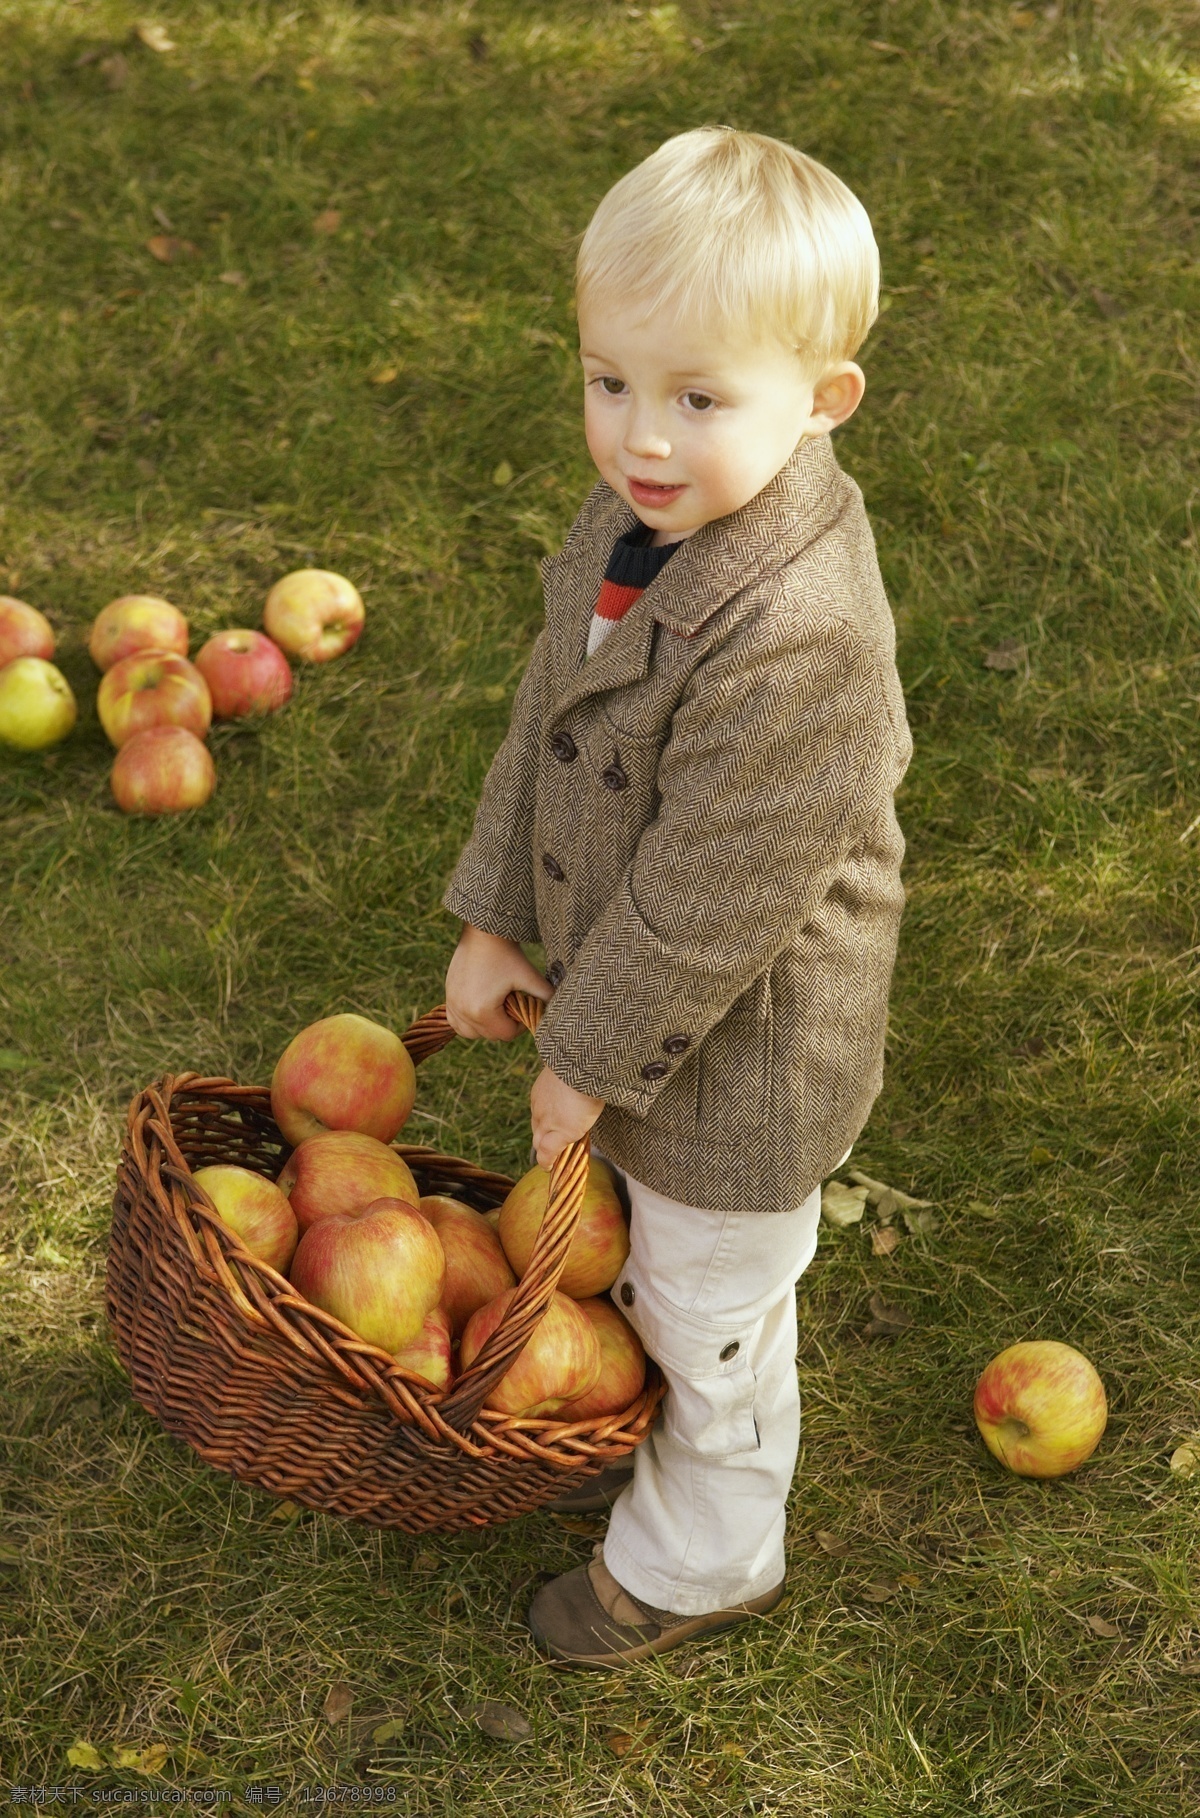 苹果 儿童 草地 苹果摄影 苹果素材 水果 儿童摄影 小孩 果篮 儿童图片 人物图片